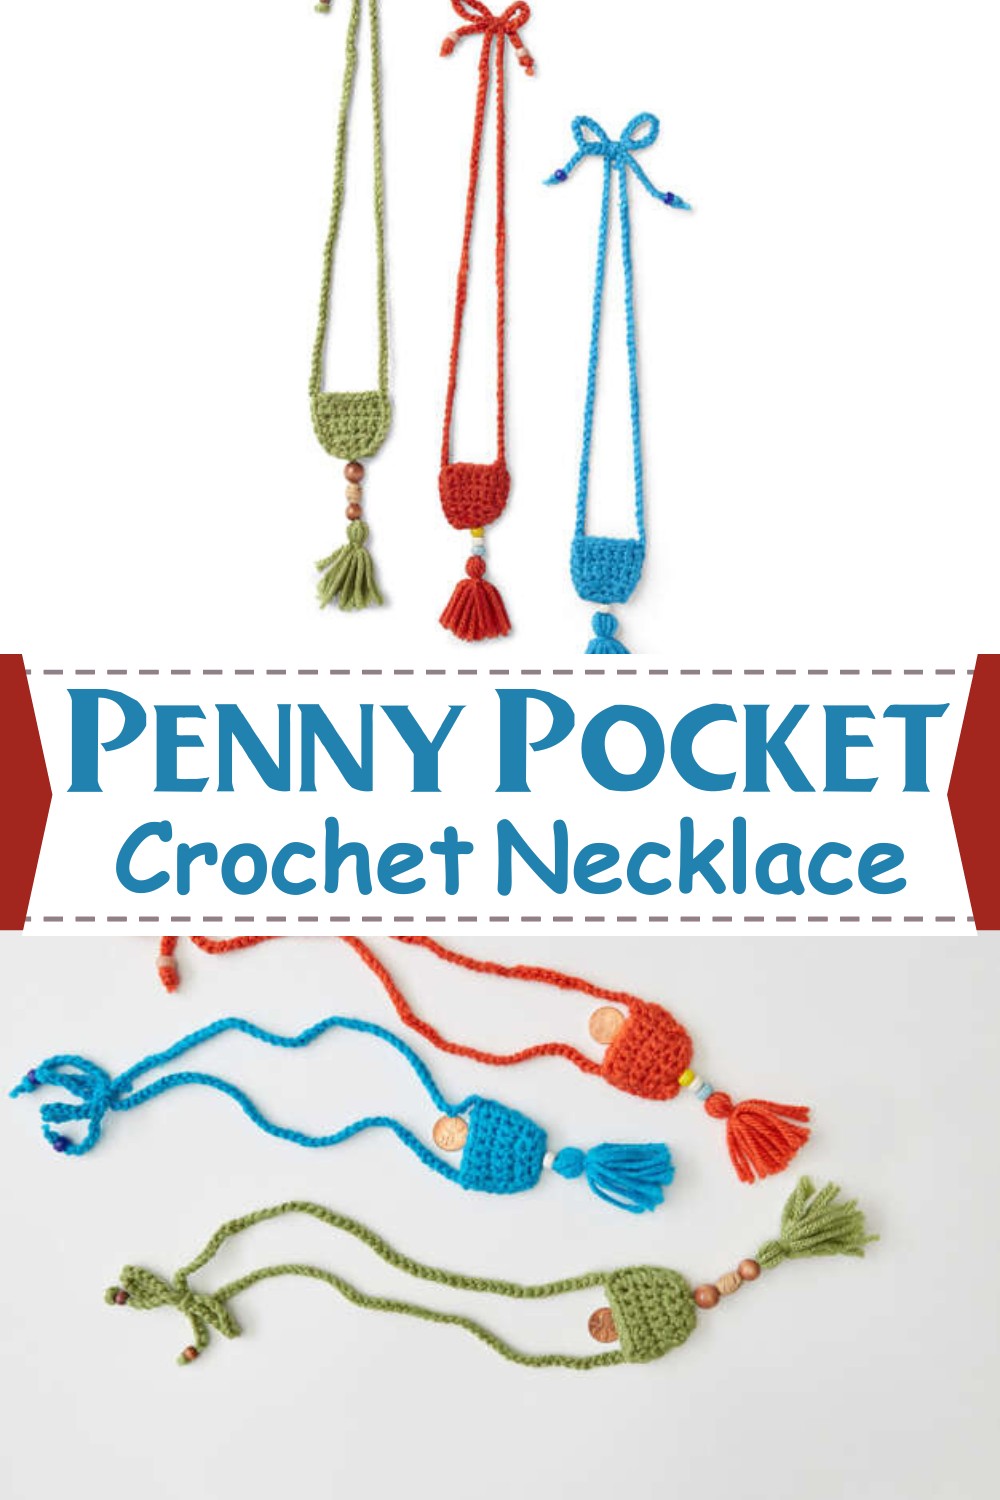 Penny Pocket Crochet Necklace